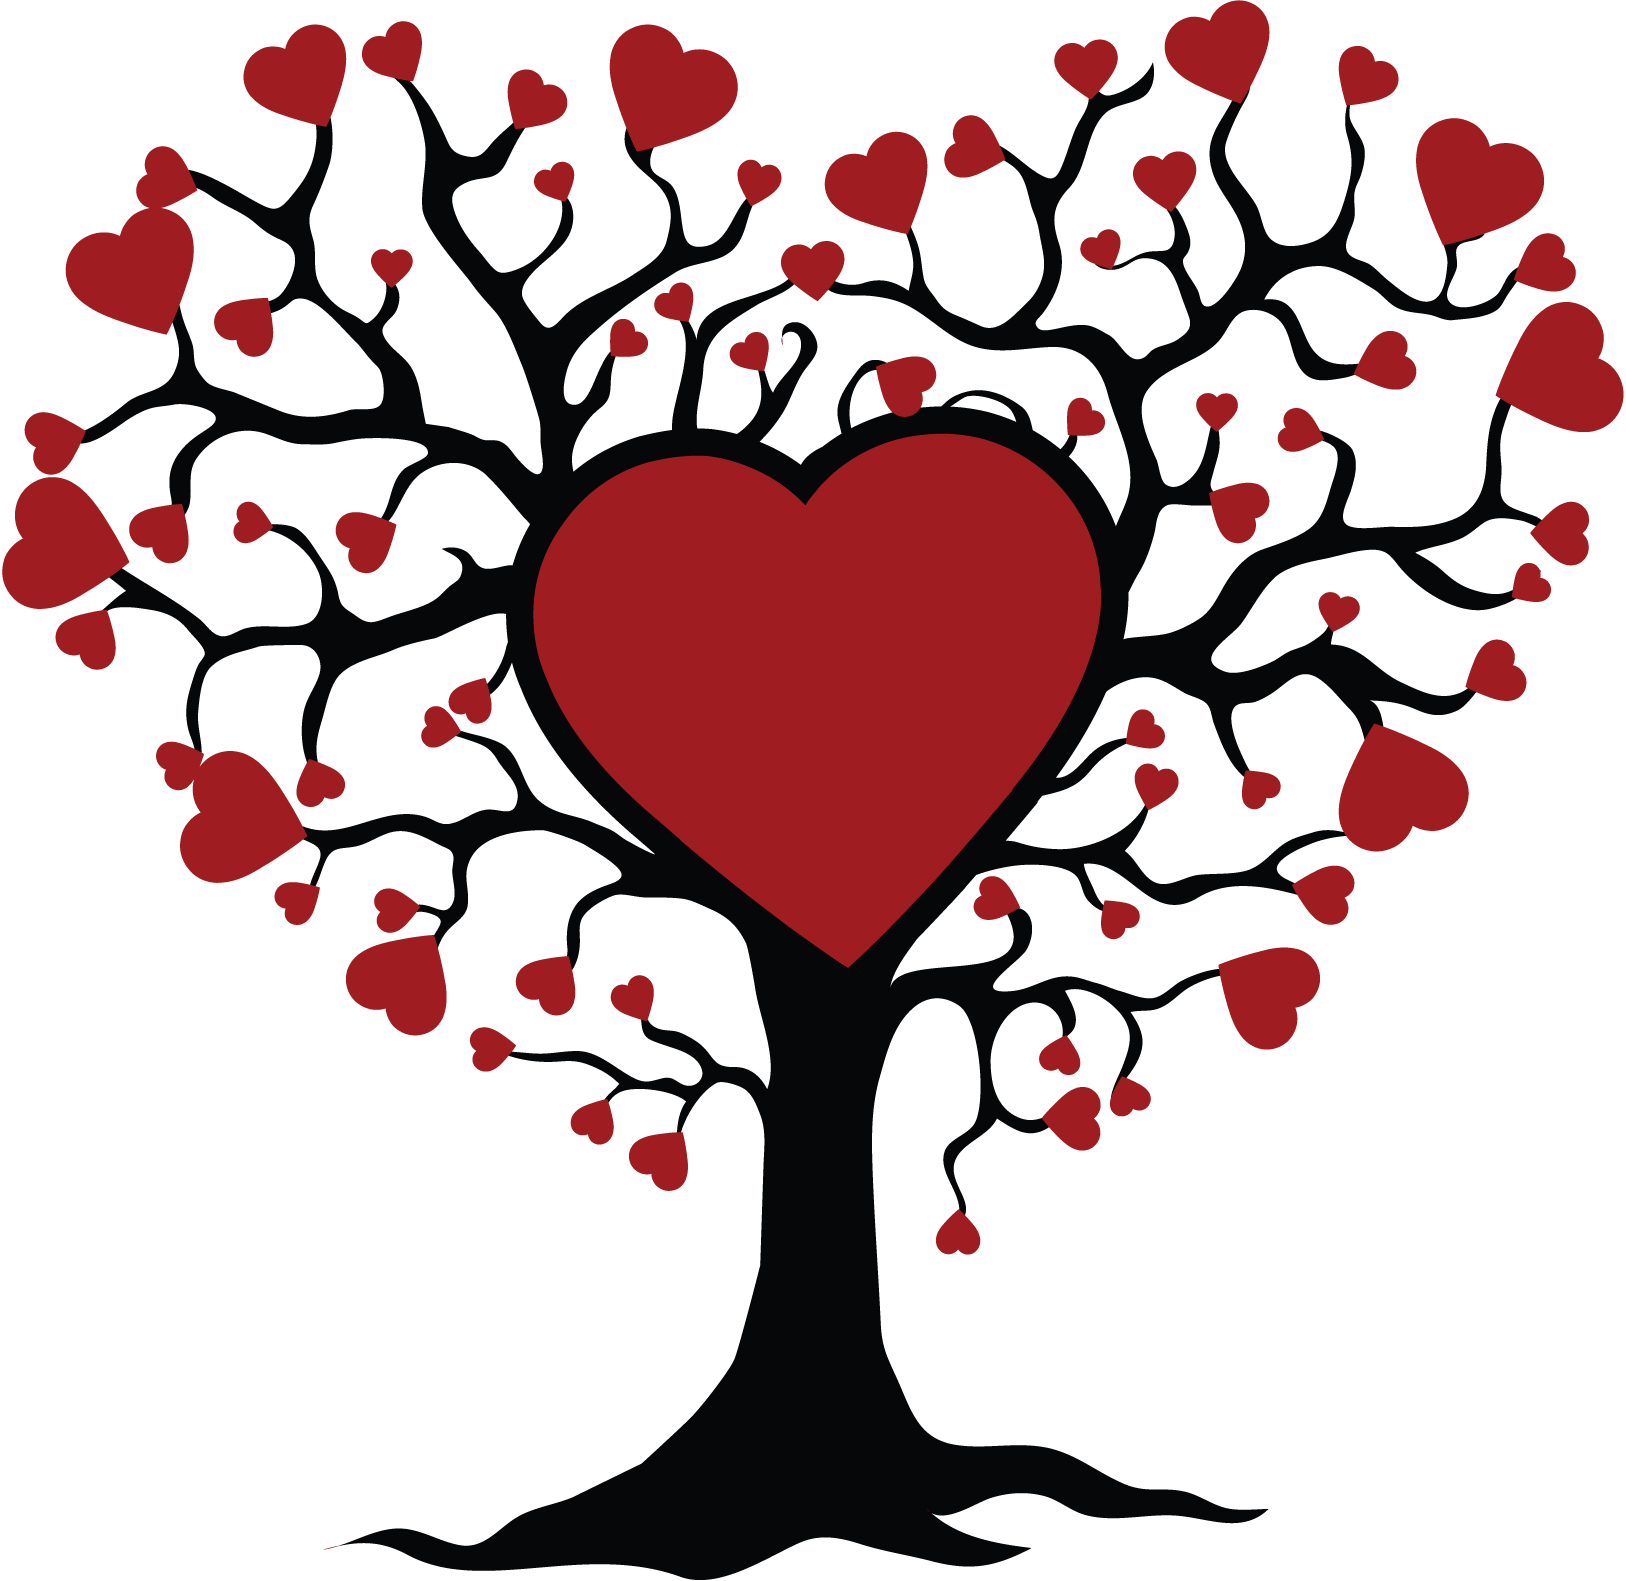 Tree Of Life Hearts (1626x1581)